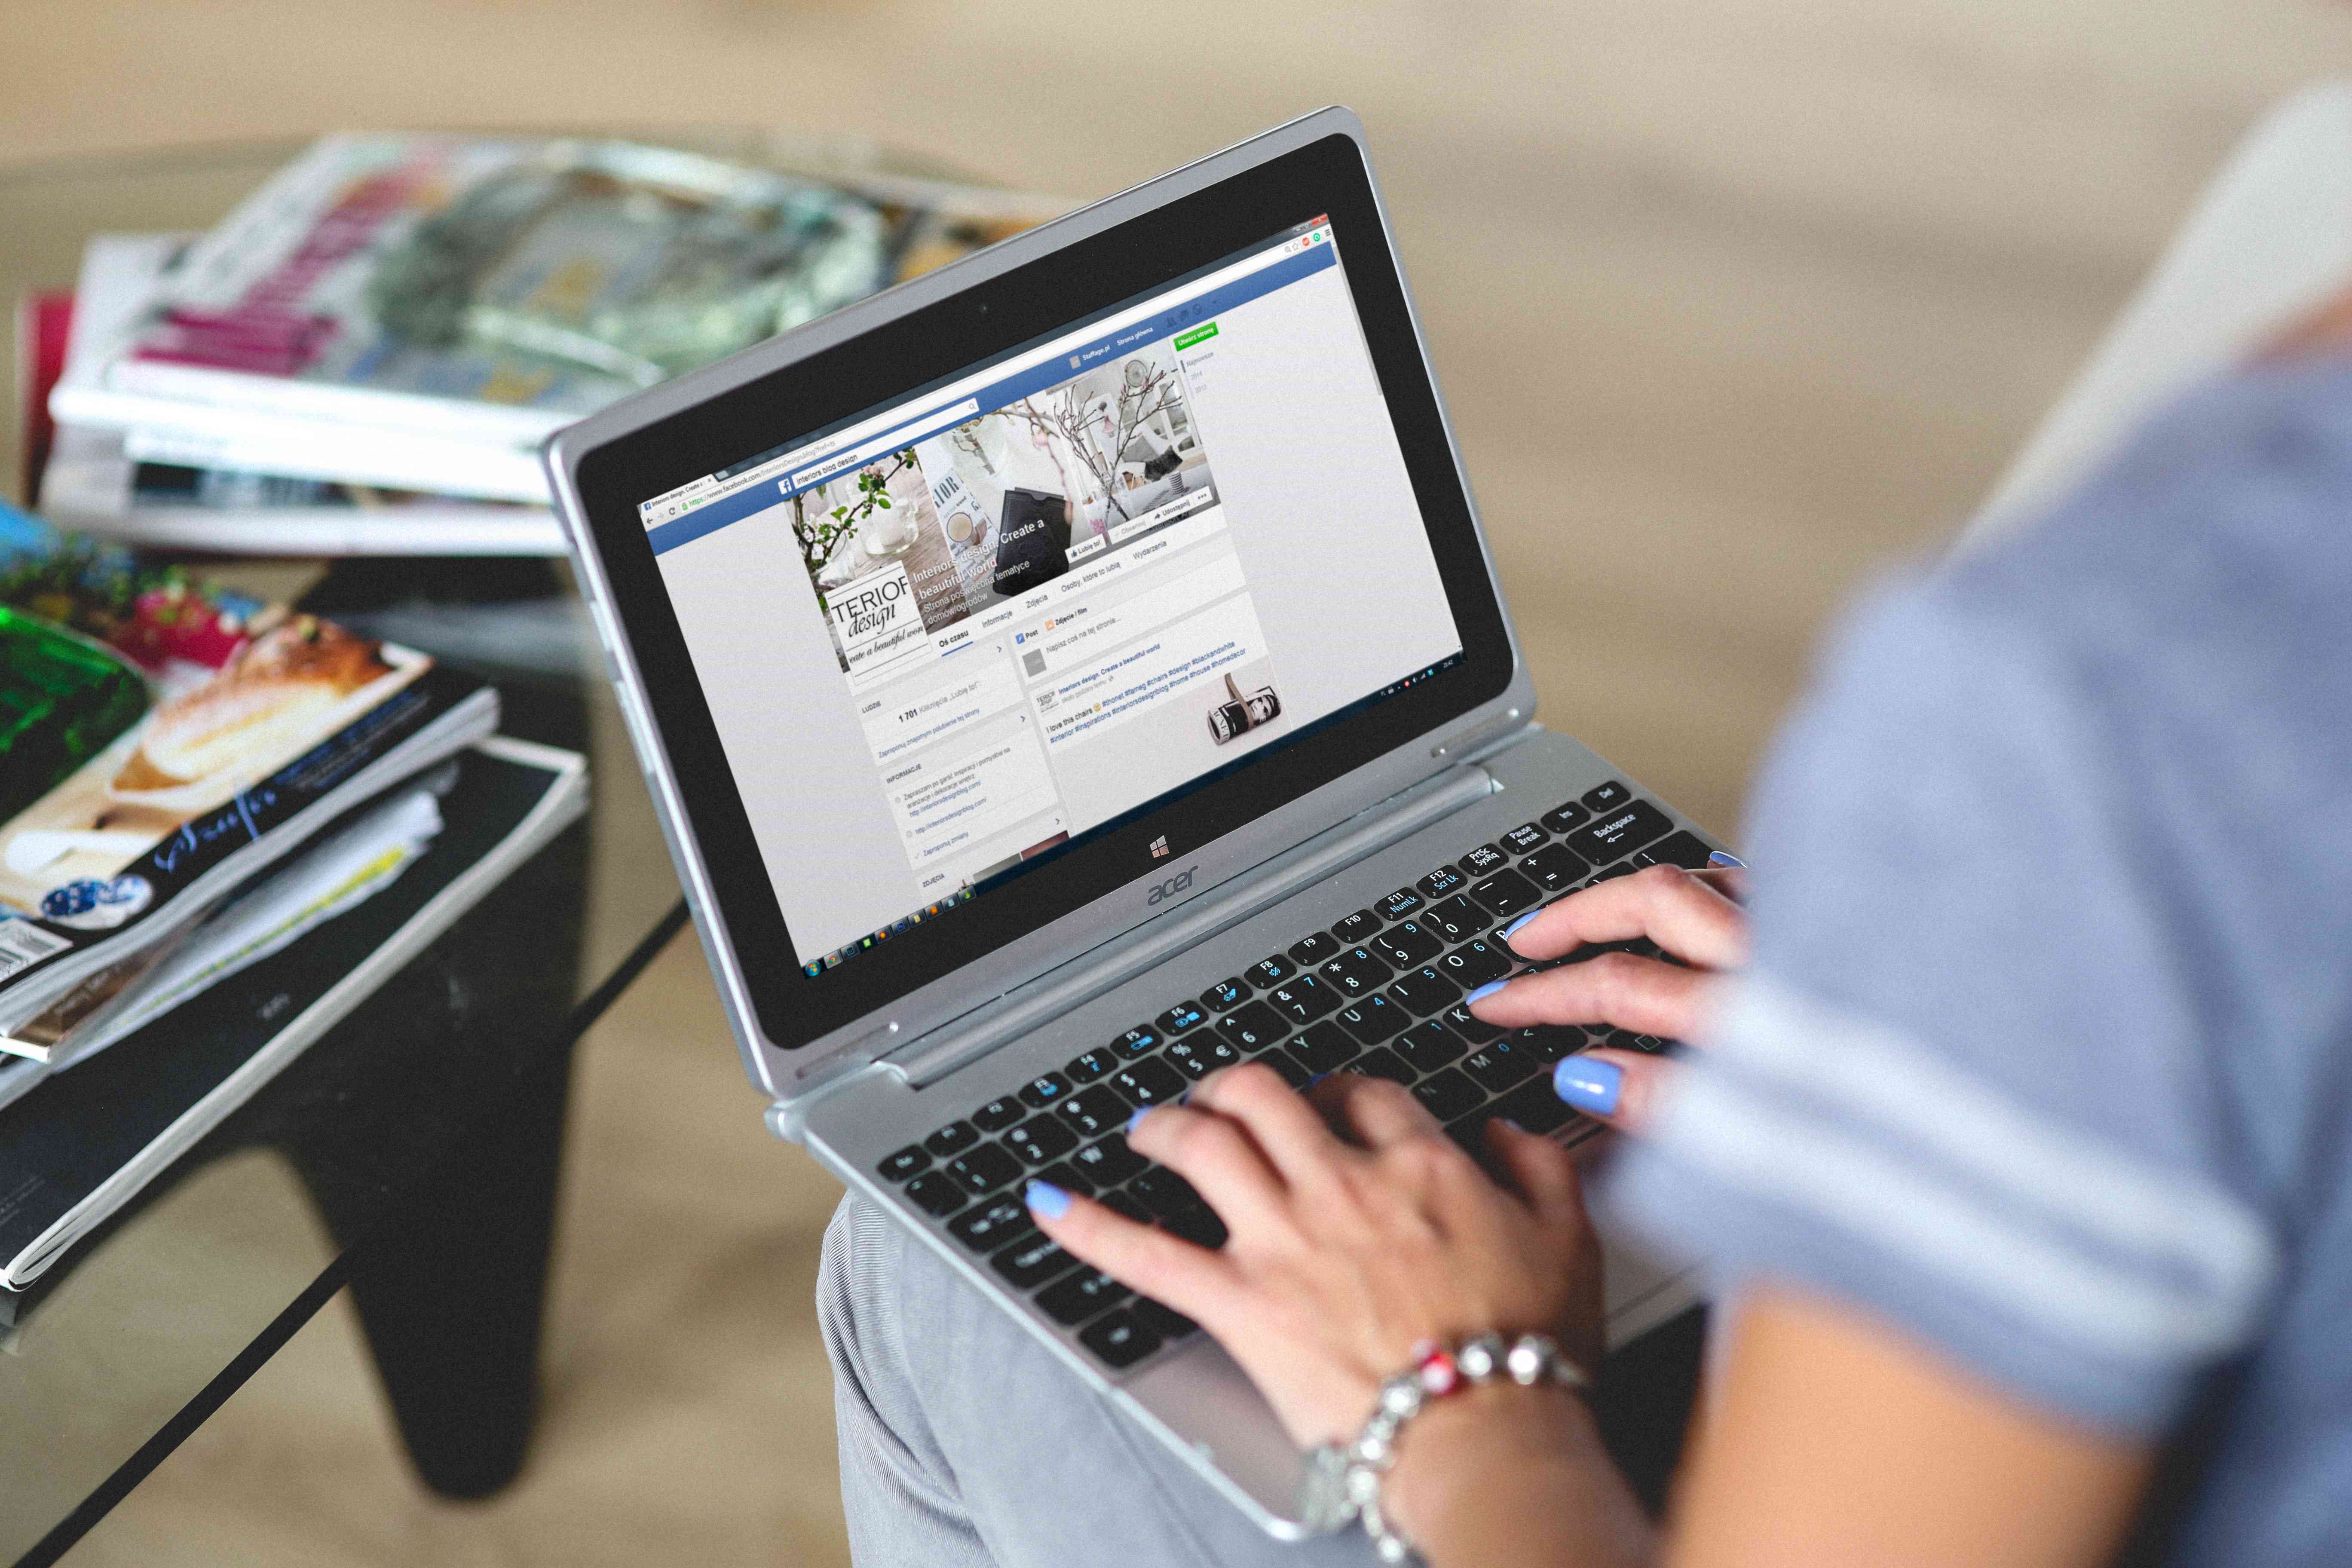 Uma imagem de uma mulher olhando para uma página do Facebook em um laptop.